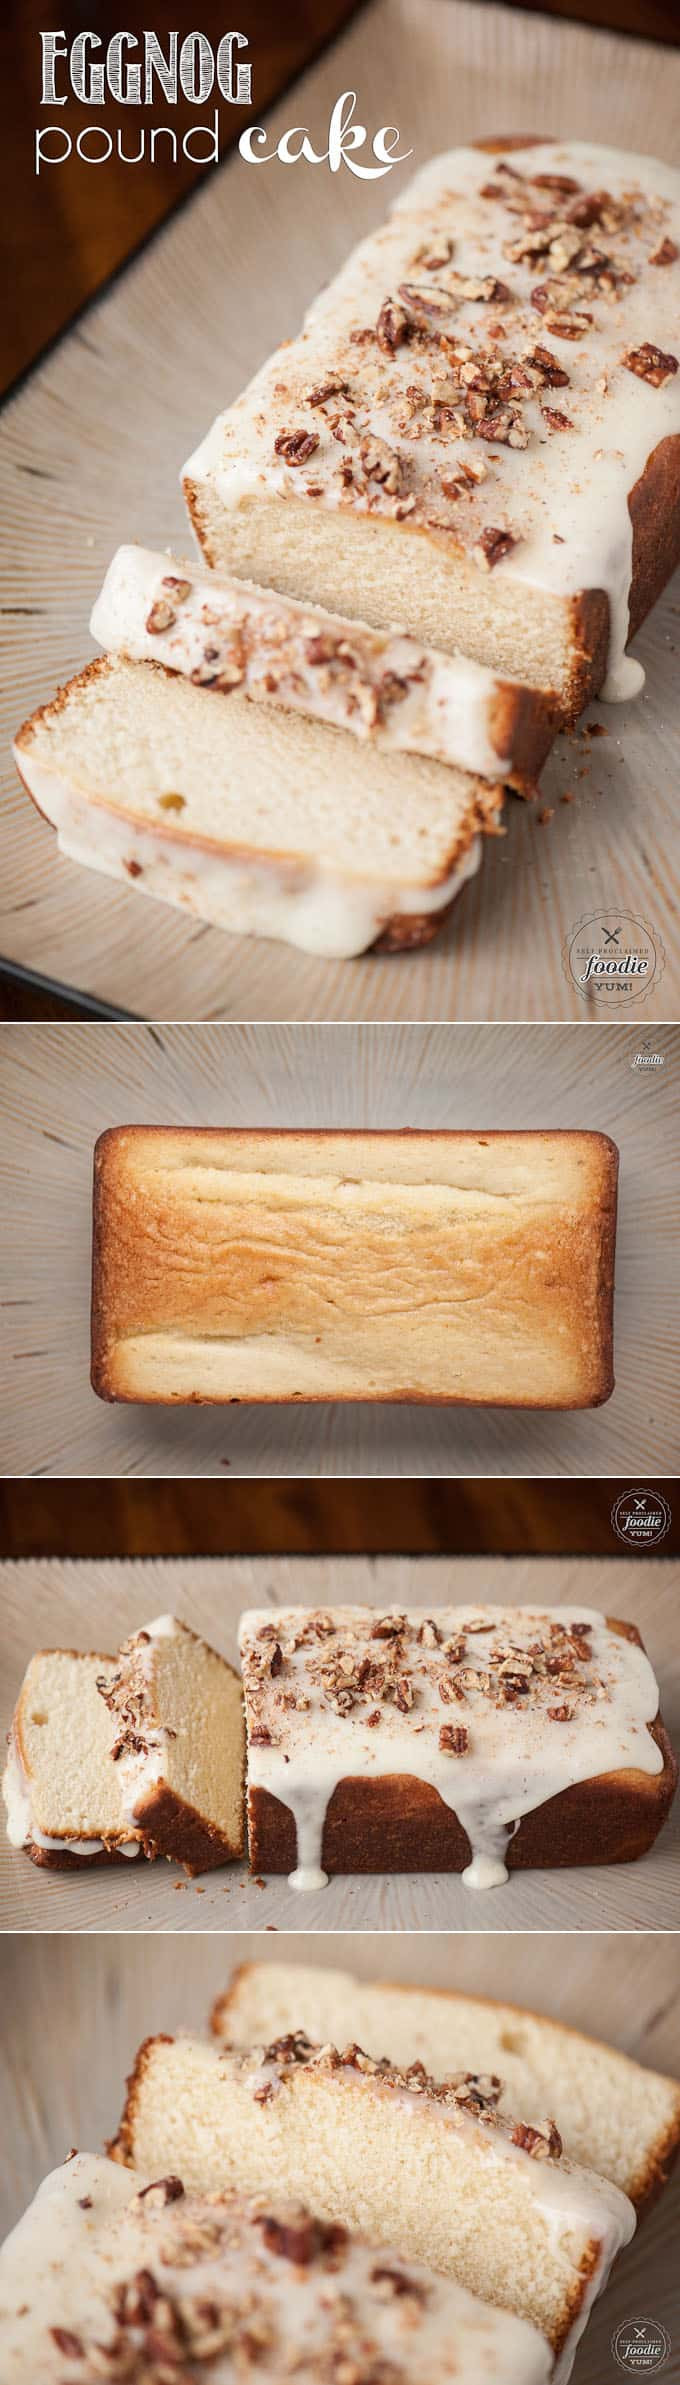 Eggnog Pound Cake Recipes From Scratch
 Eggnog Pound Cake